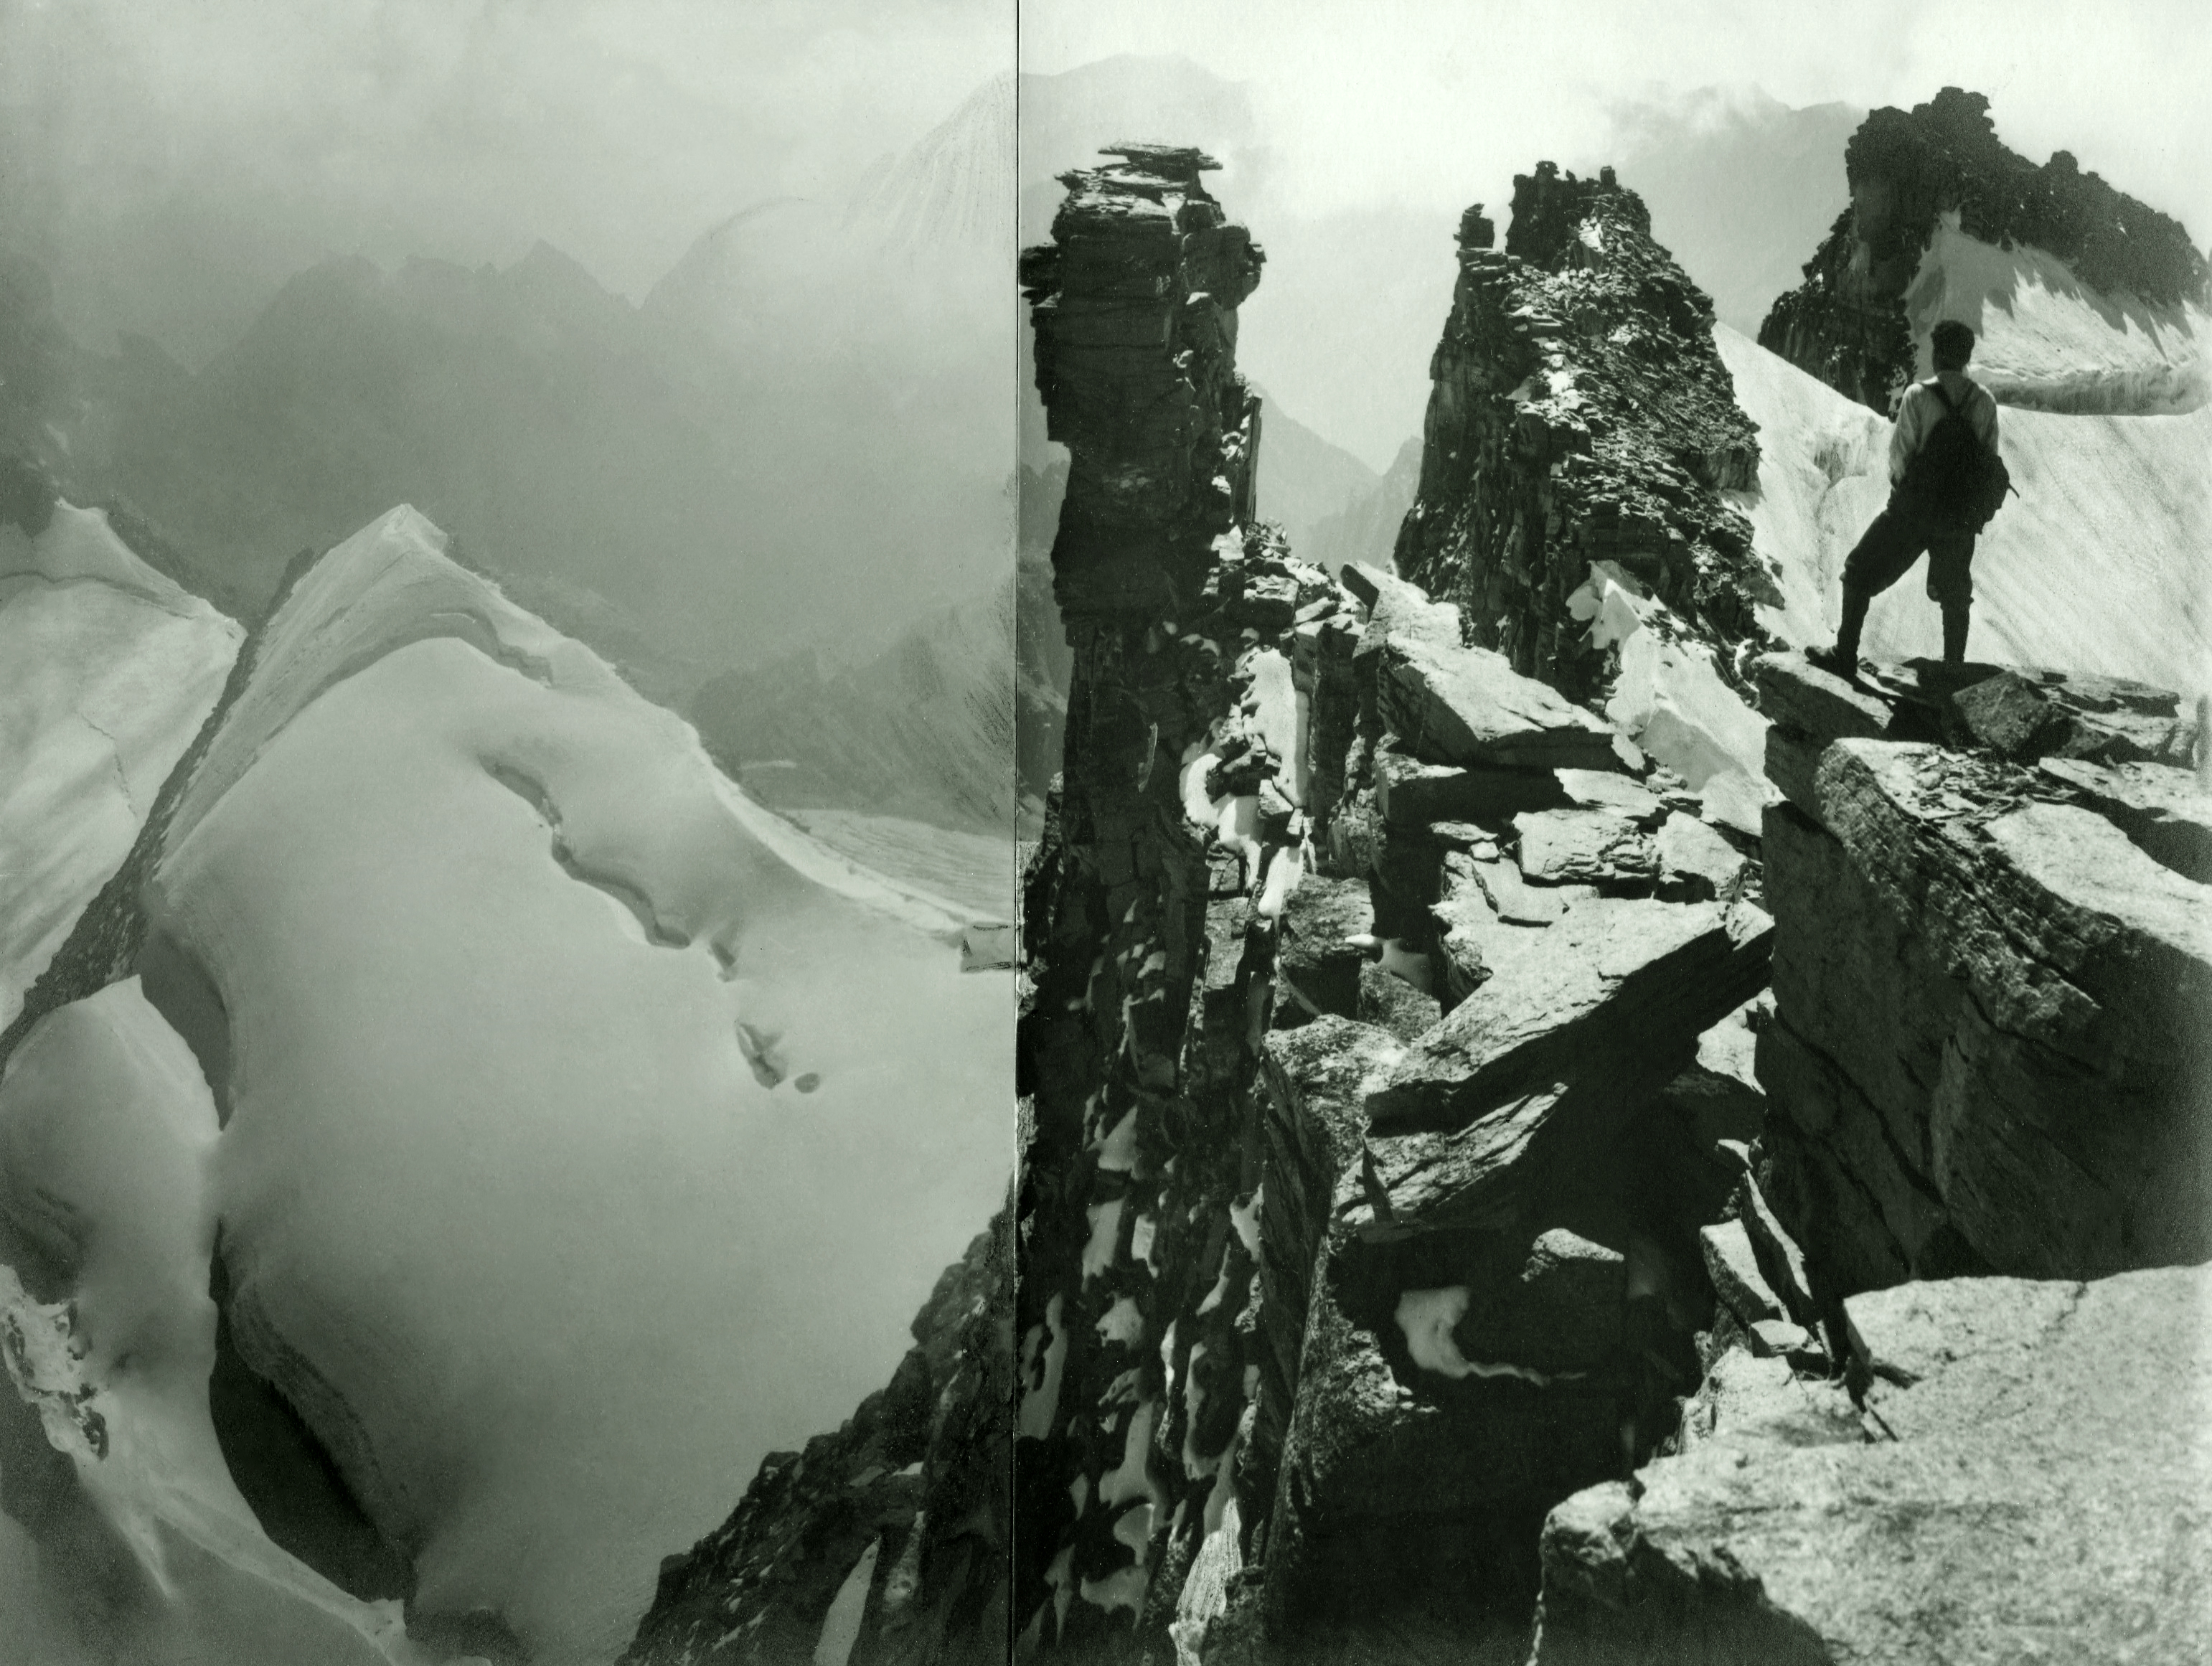 Vom Gran Paradiso gegen Südosten, auf den Felsklippen Alfred Cohn. Montage aus zwei Aufnahmen. September 1928.